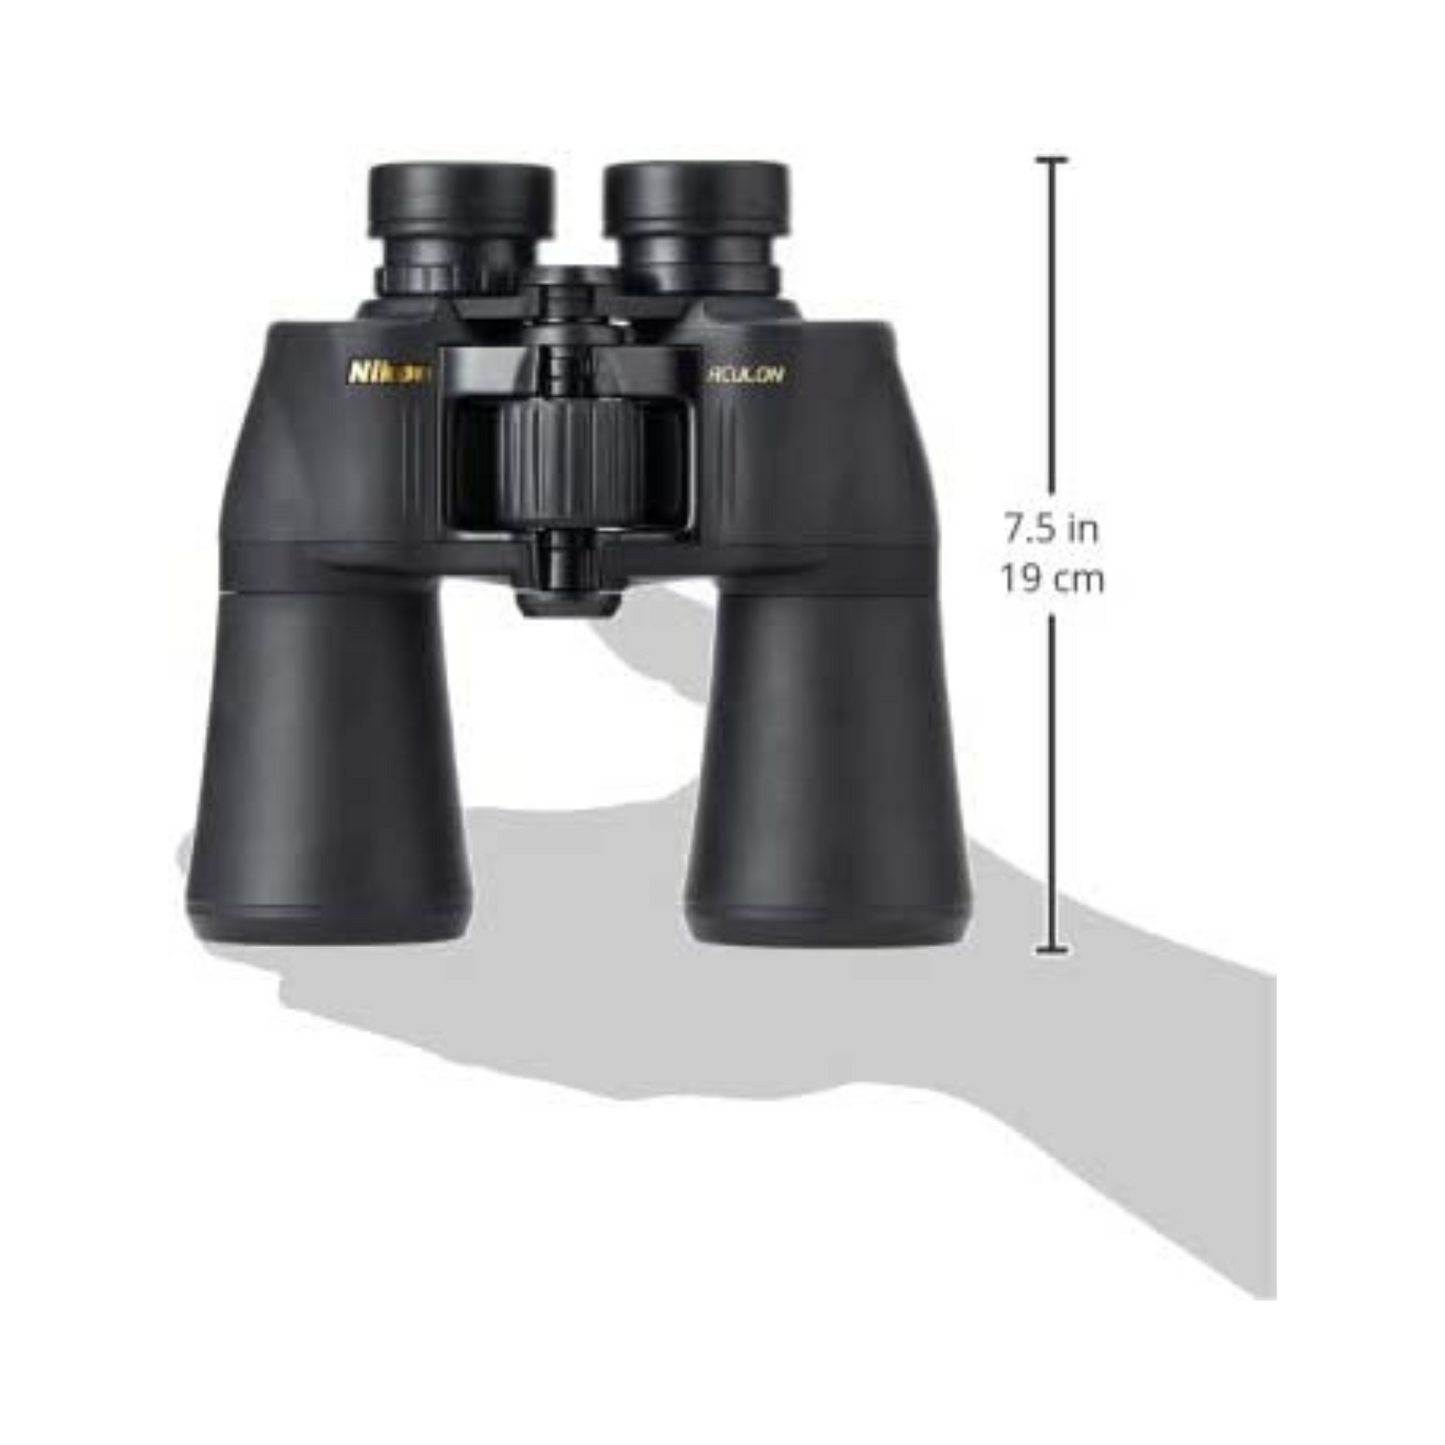 Nikon Aculon A211 10x50 Binocular (Black)